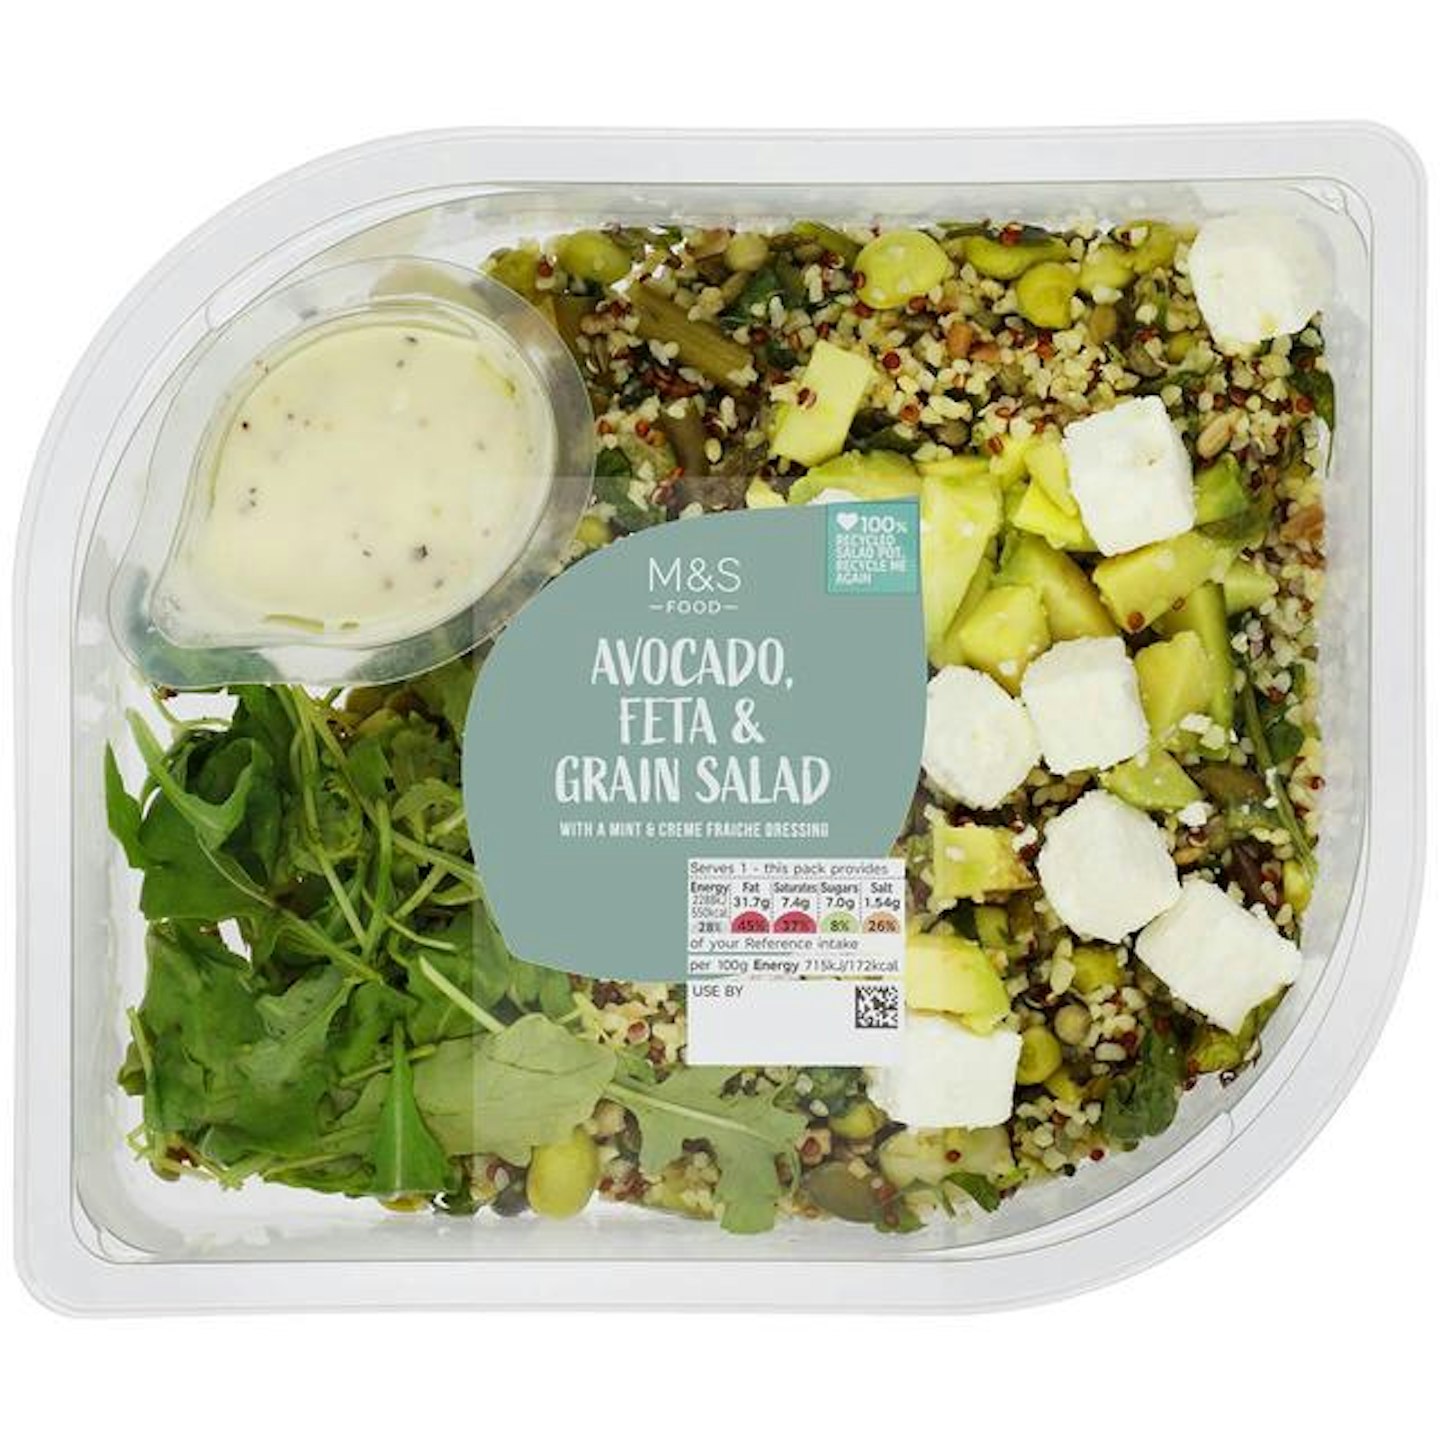 M&S Avocado, Feta & Grain Salad